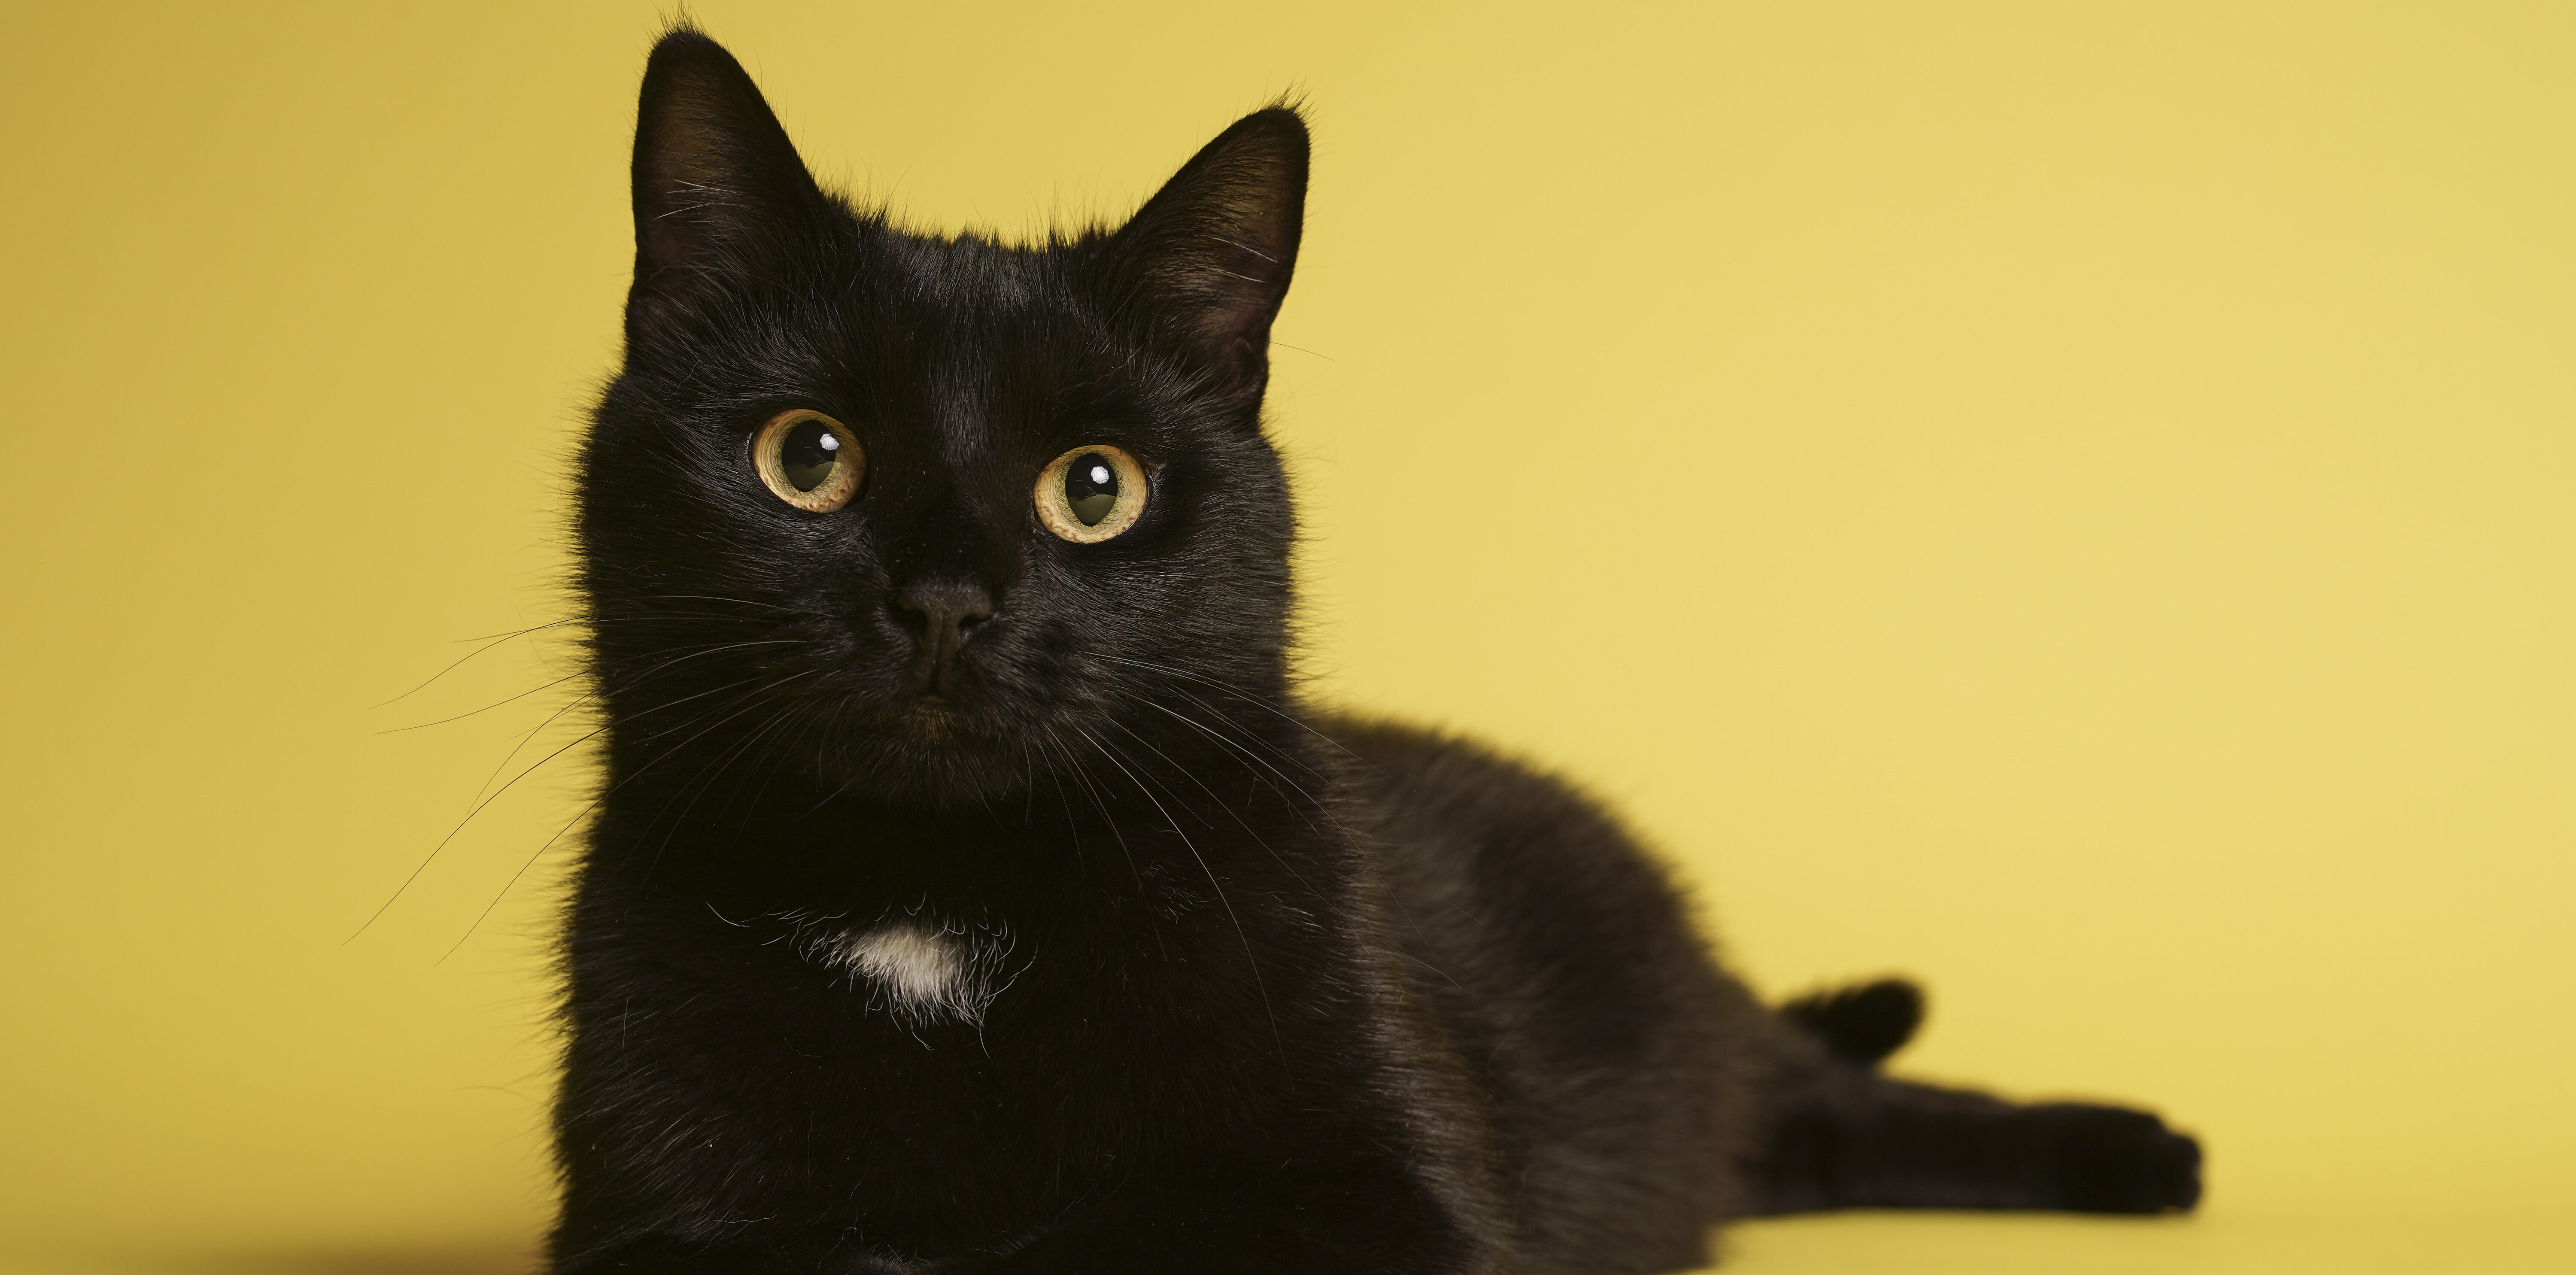 omvang verbergen Harmonisch Zwarte asielkatten krijgen hulp bij vinden van thuis: 'Brengen geen ongeluk'